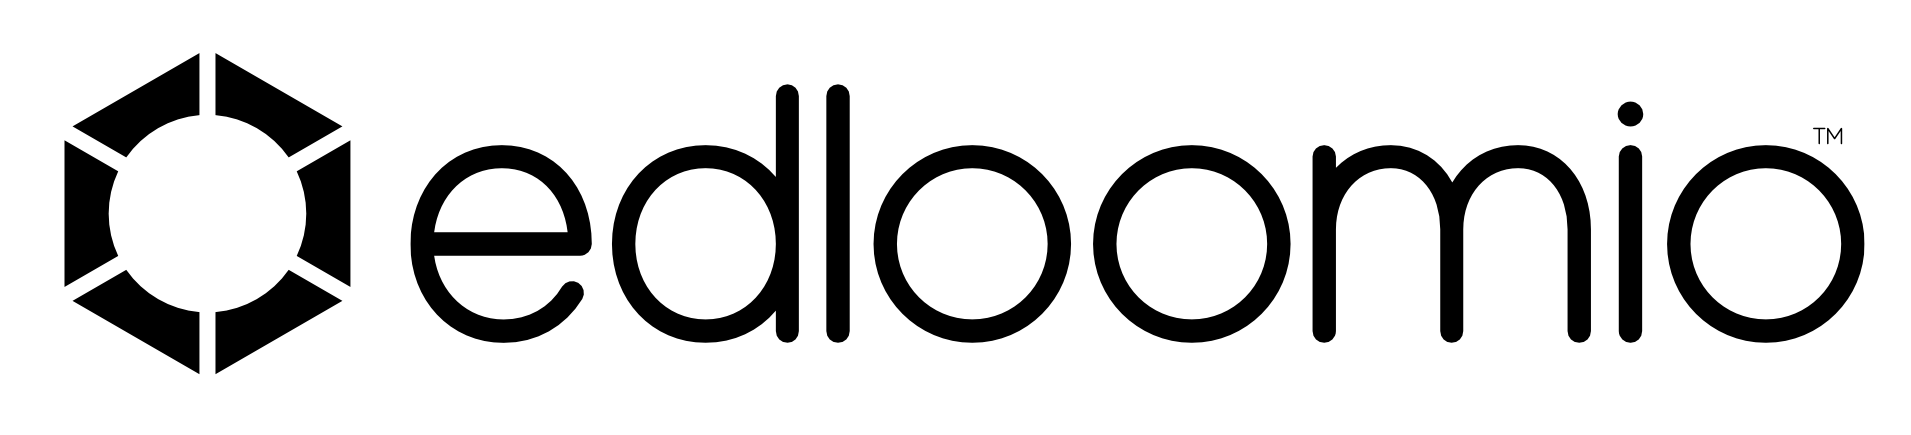 Edloomio Logo